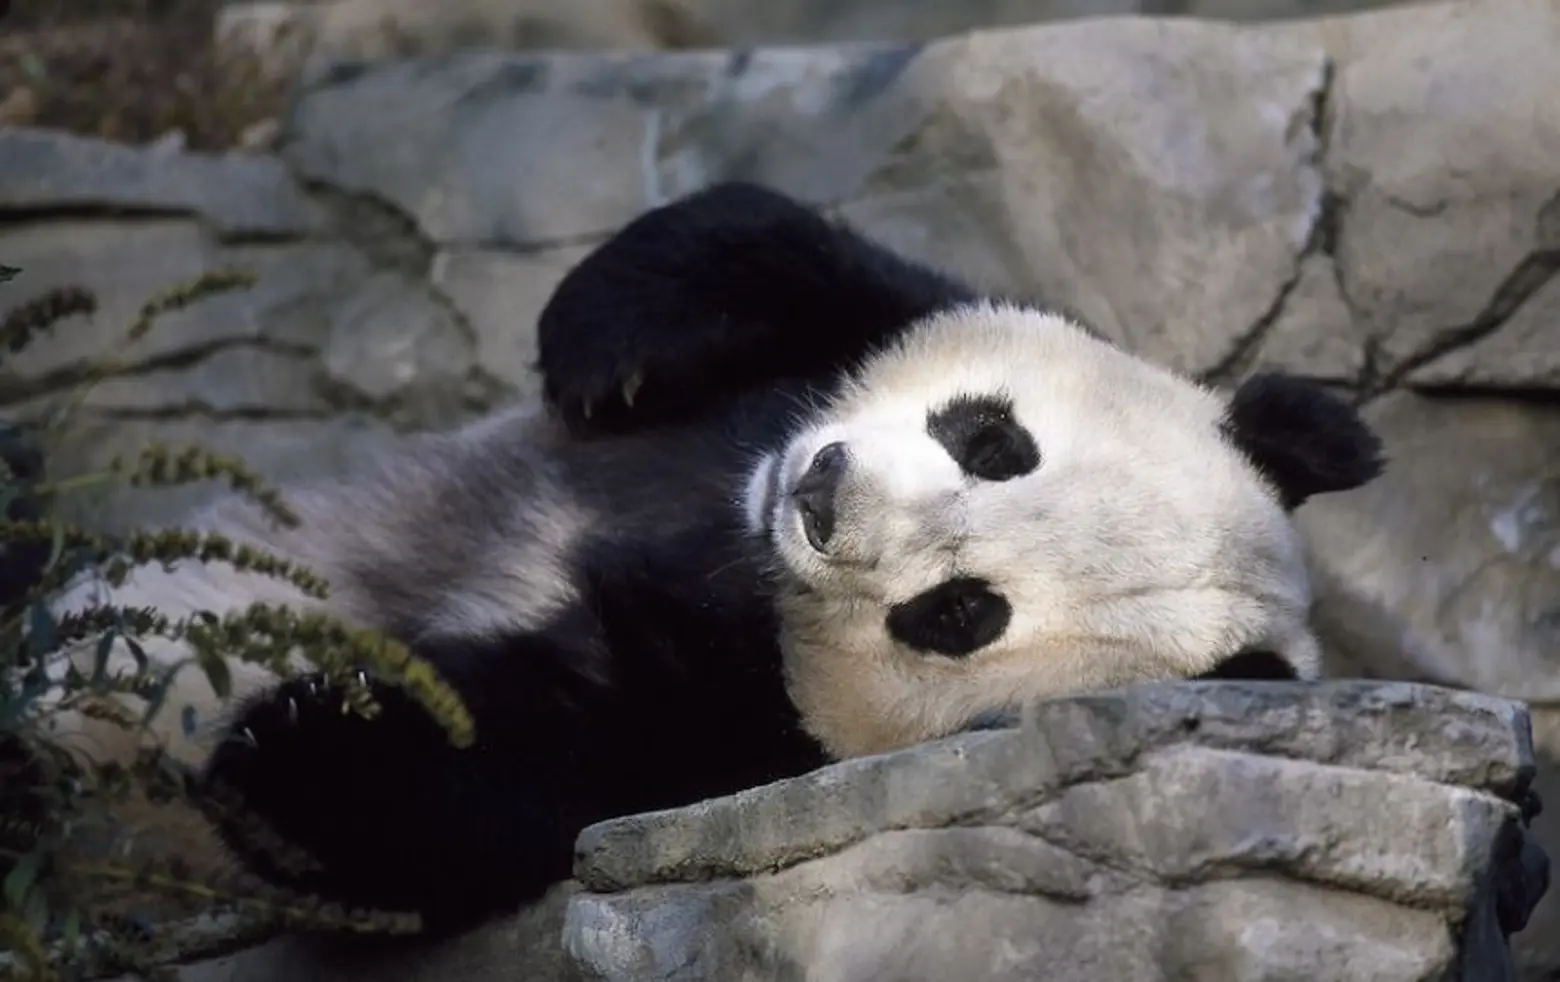 Trump’s sons asked to help build Central Park panda pavilion